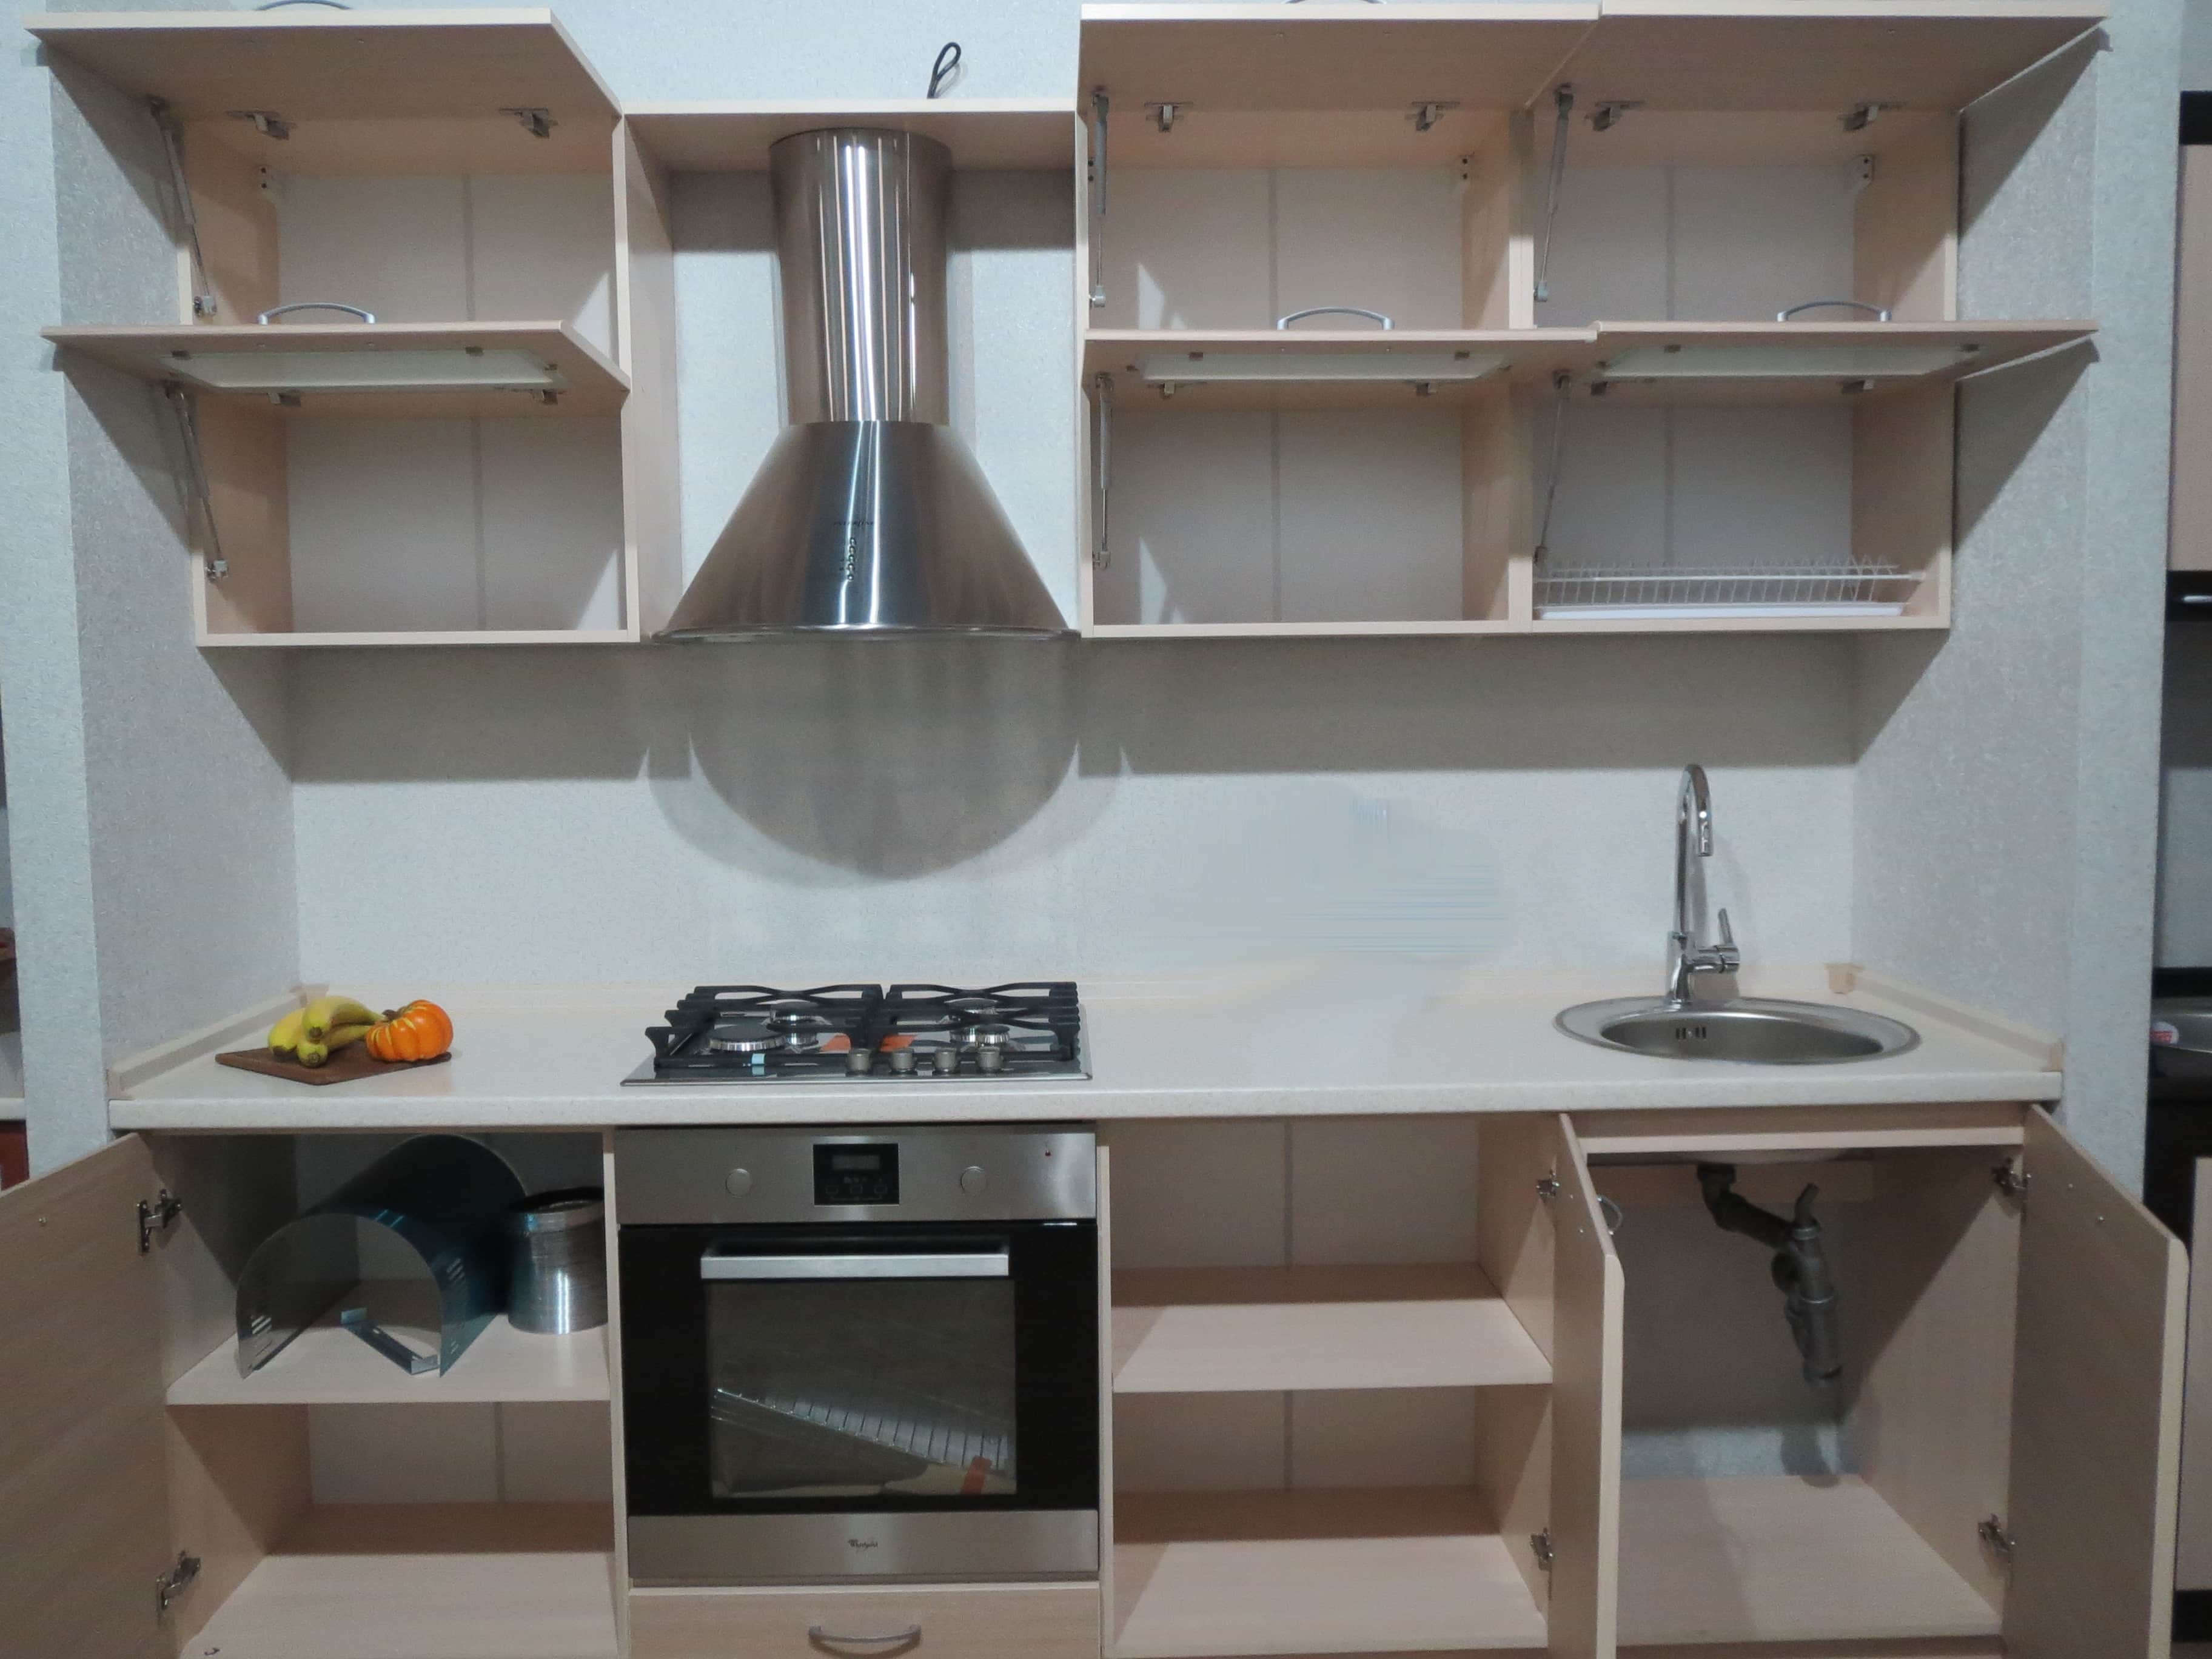 Мебель для кухни своими руками: шкаф, откидной столик